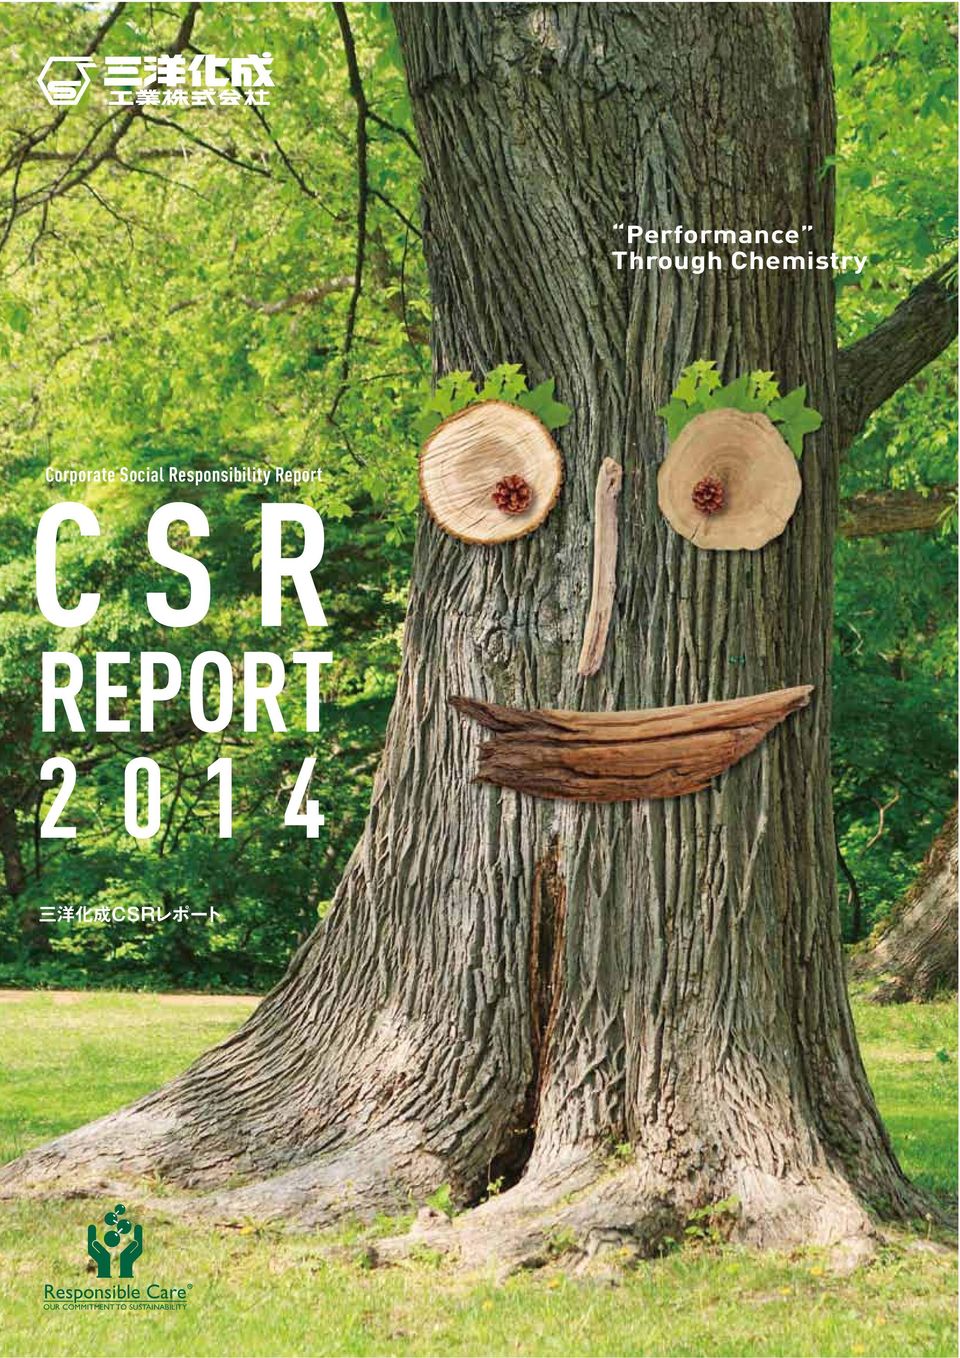 Report CSR REPORT 2014